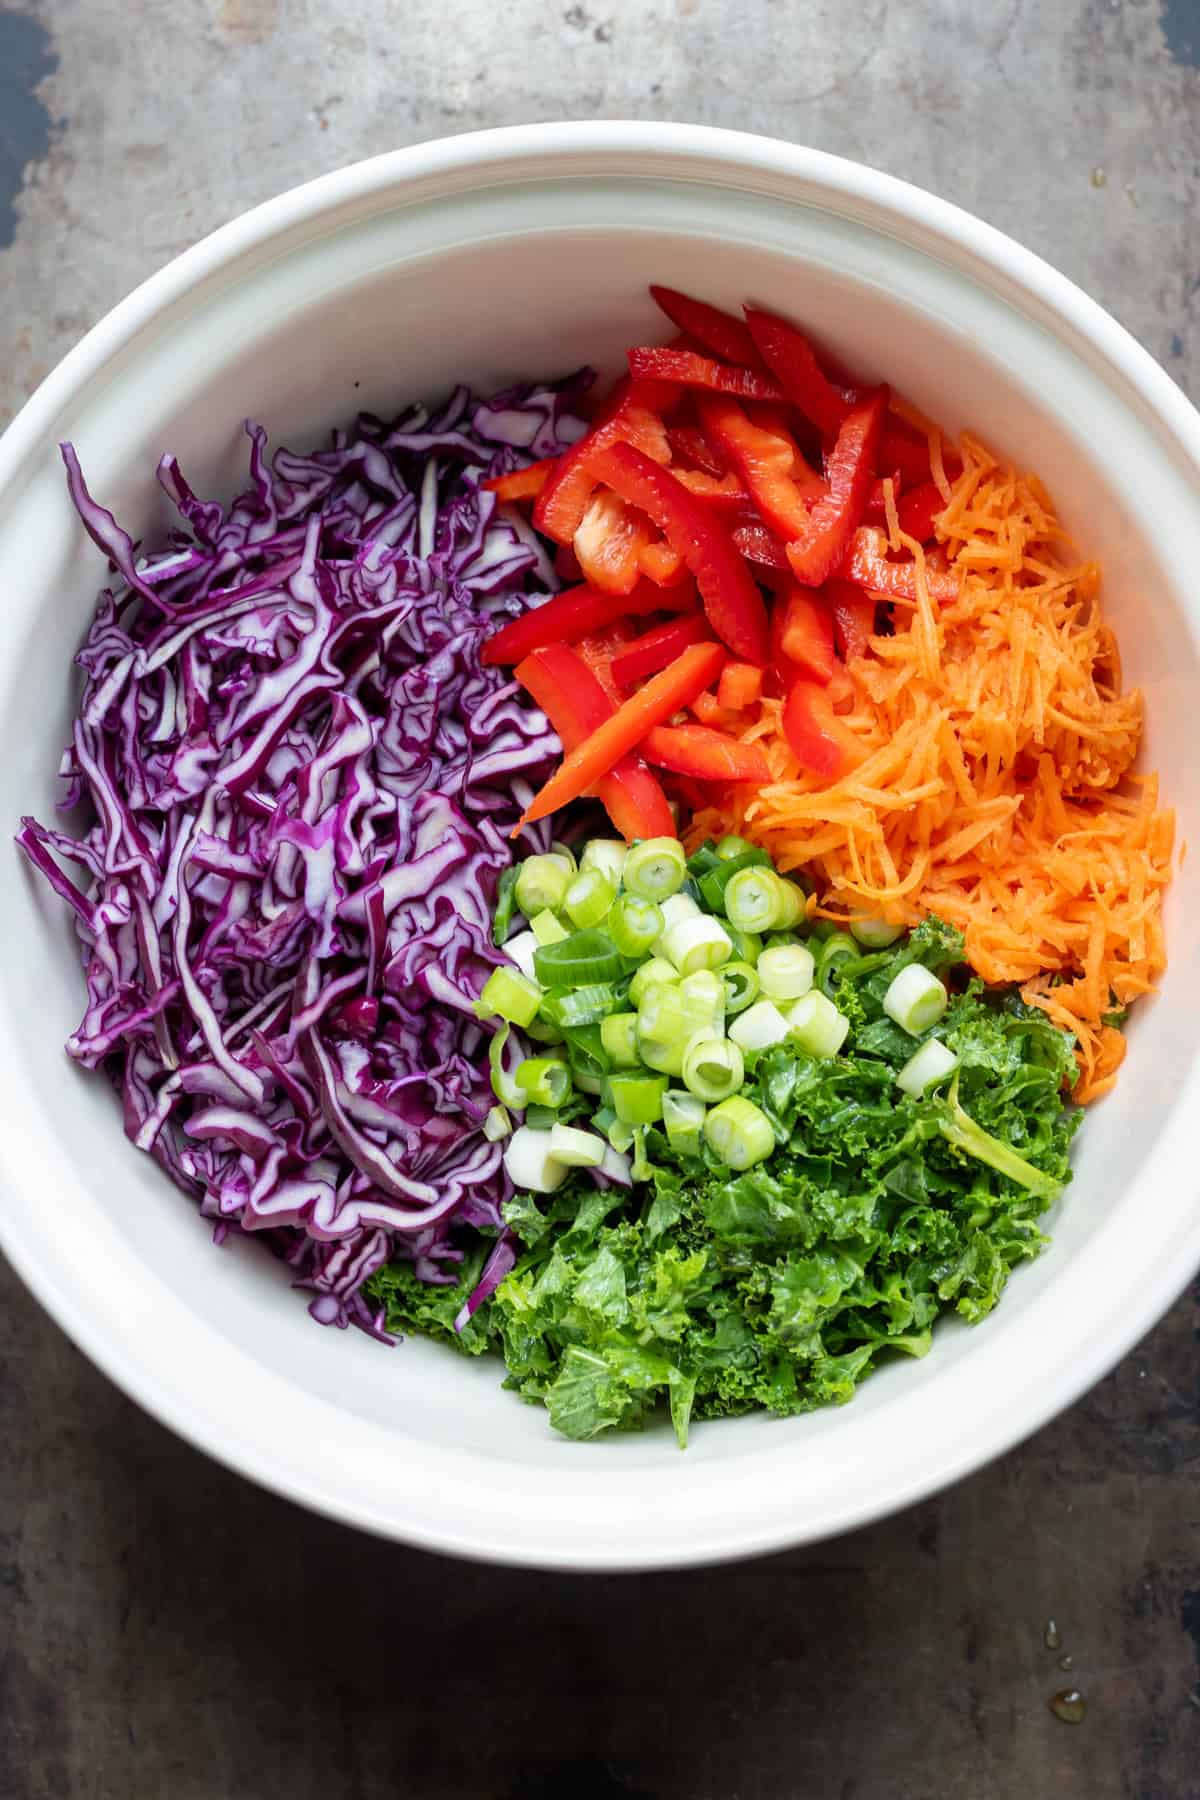 Vegetable ingredients in a bowl.